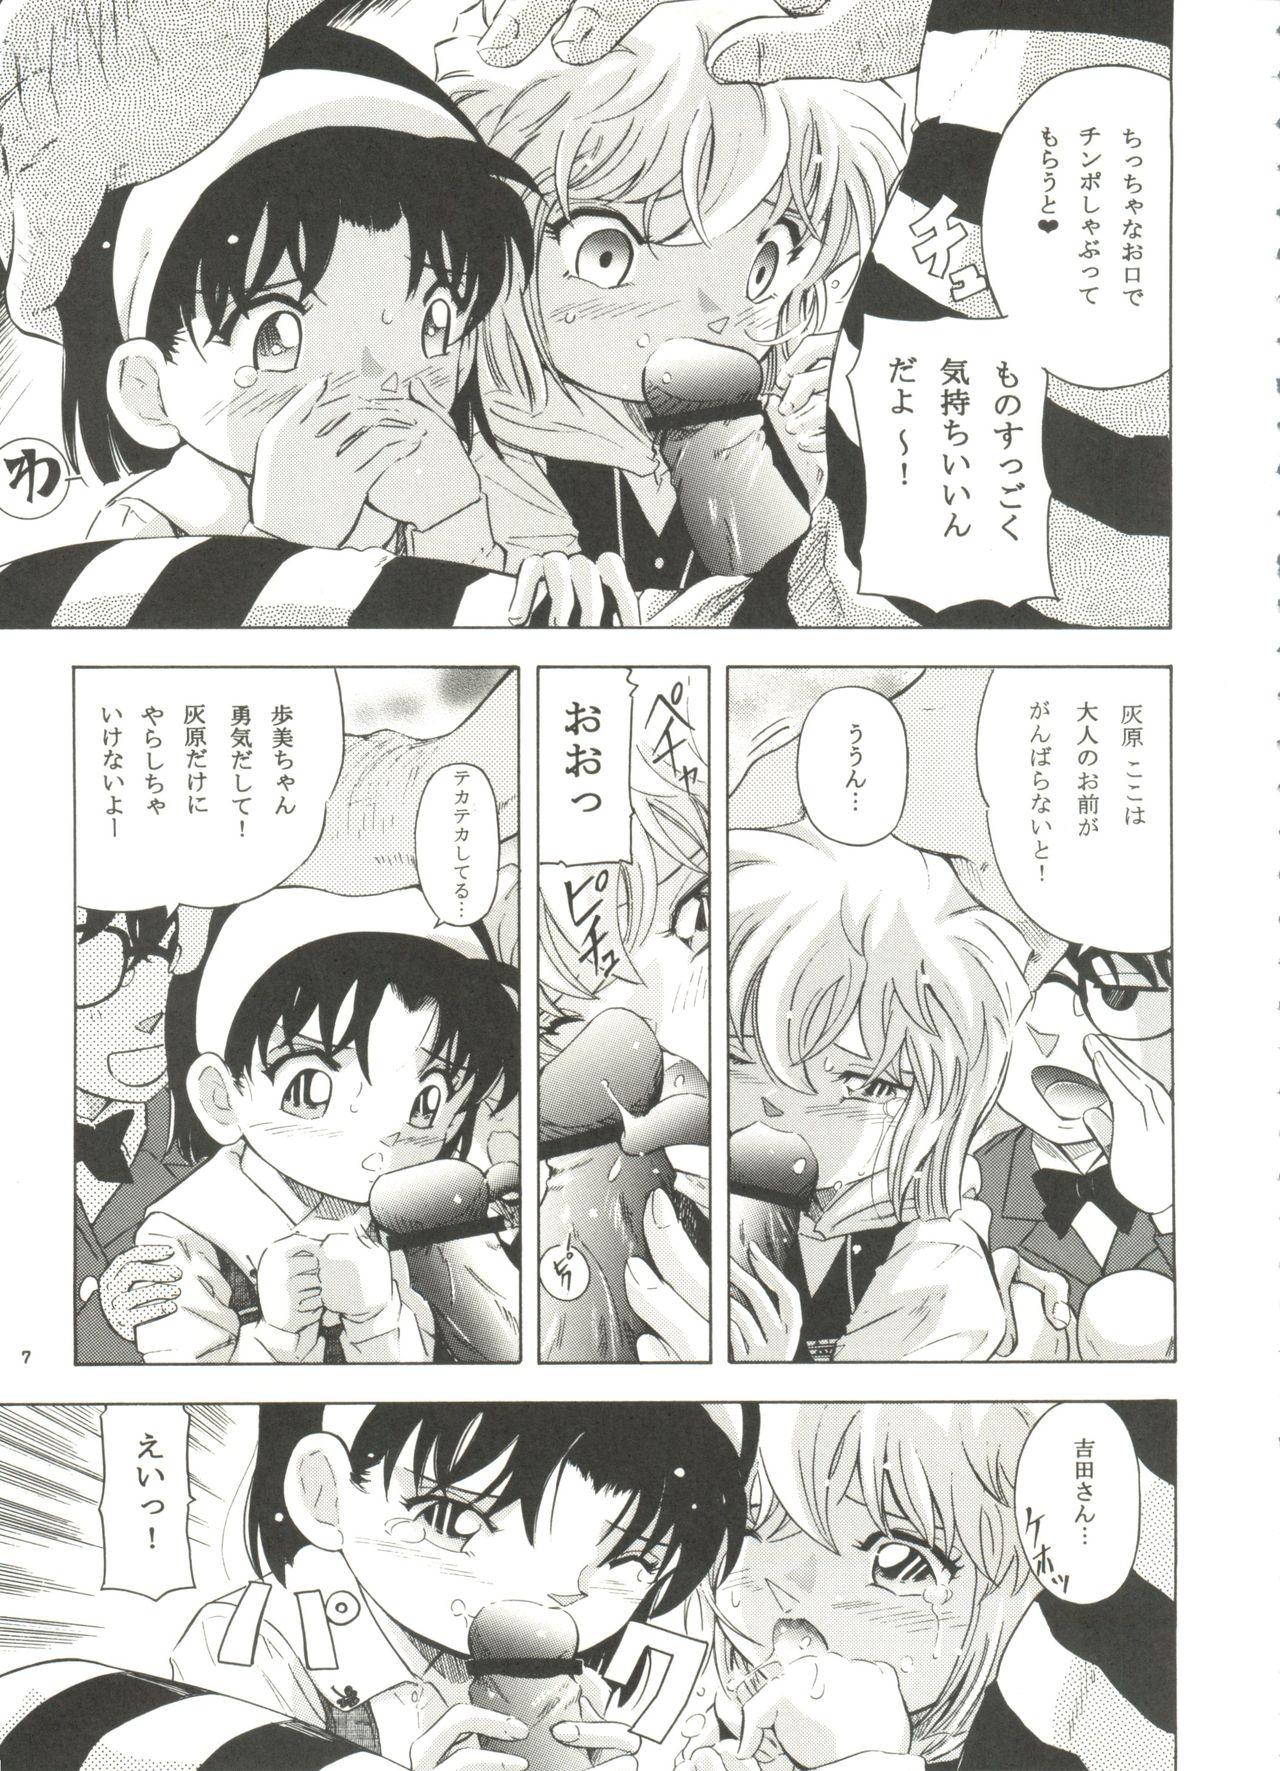 8teenxxx Injuu Vol. 6 Teitanko Jiken - Detective conan British - Page 6